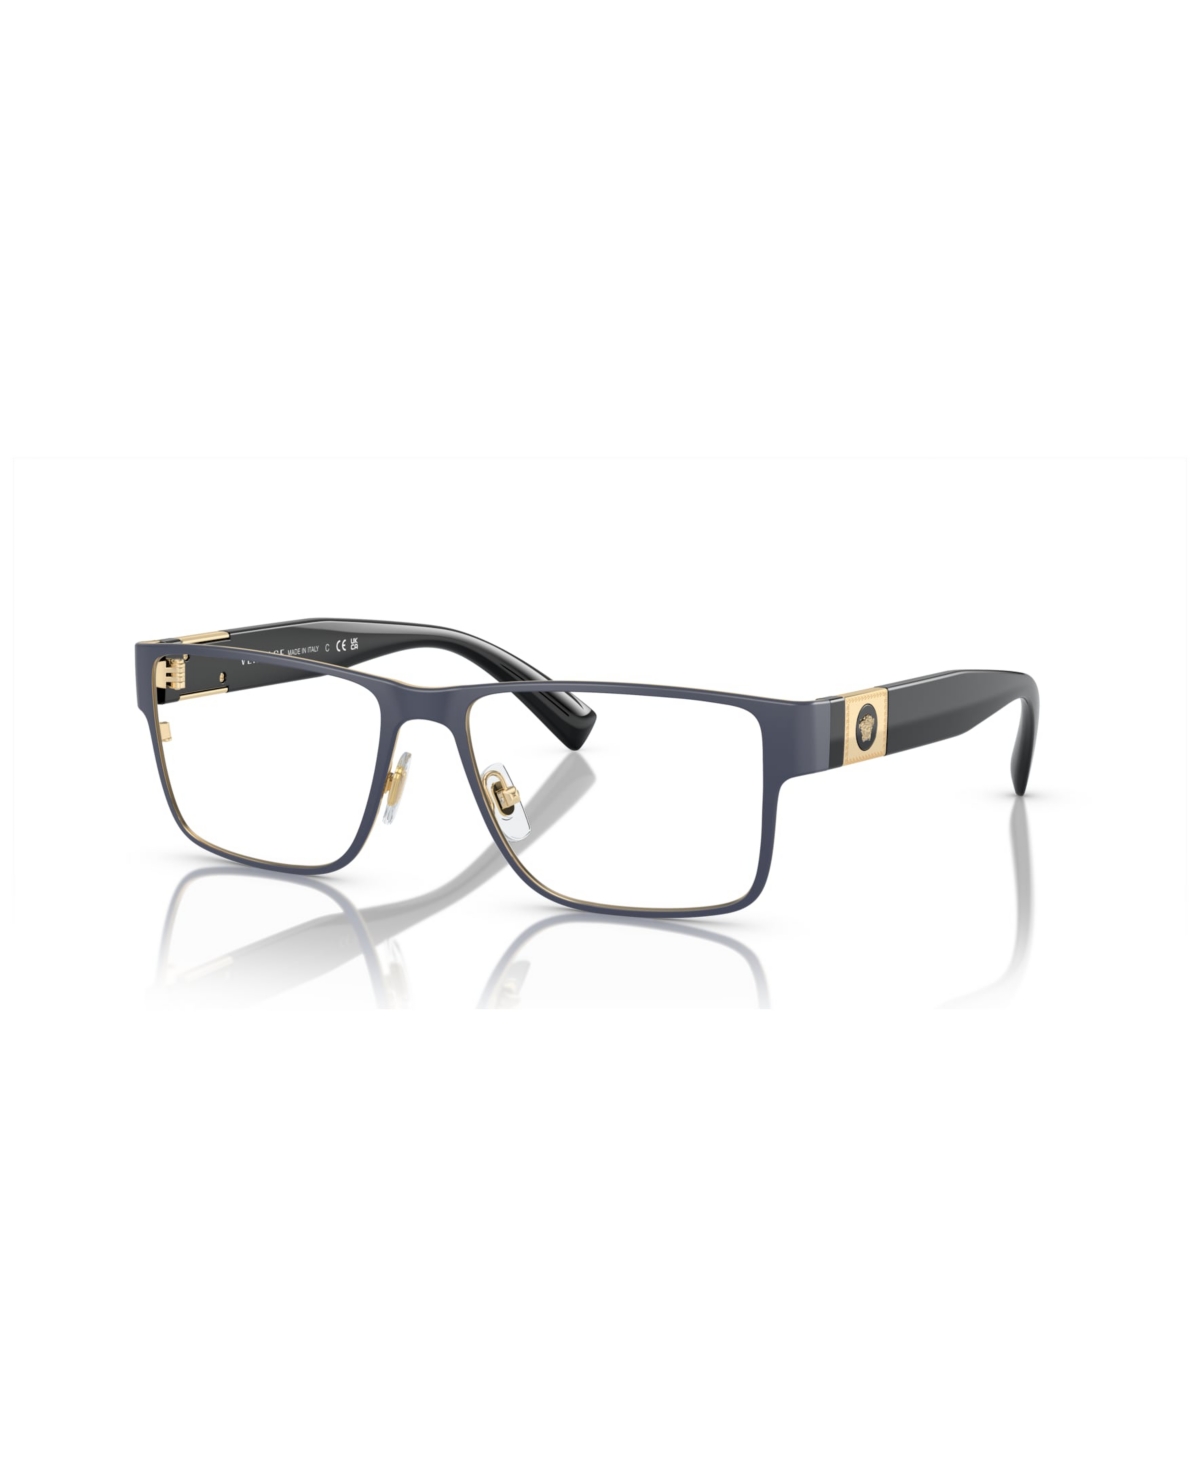 Men's Eyeglasses, VE1274 - Black